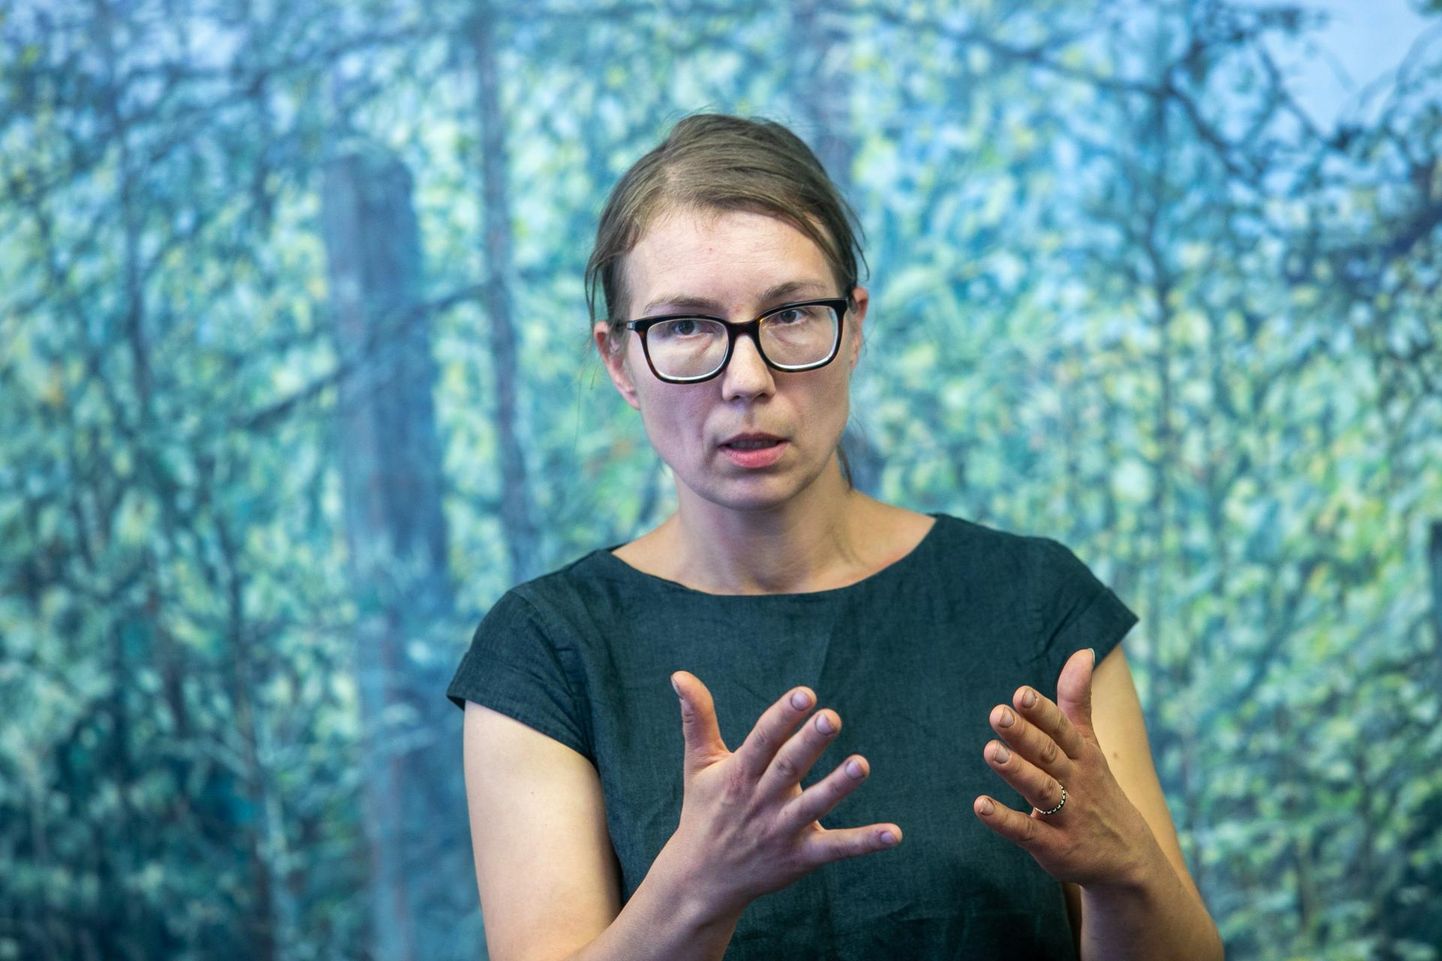 Jane Remmi maalinäitusel “Kännud” Rakvere Galeriis avab mets vaatajale nii oma hingelise kui ka teaduspõhise külje.